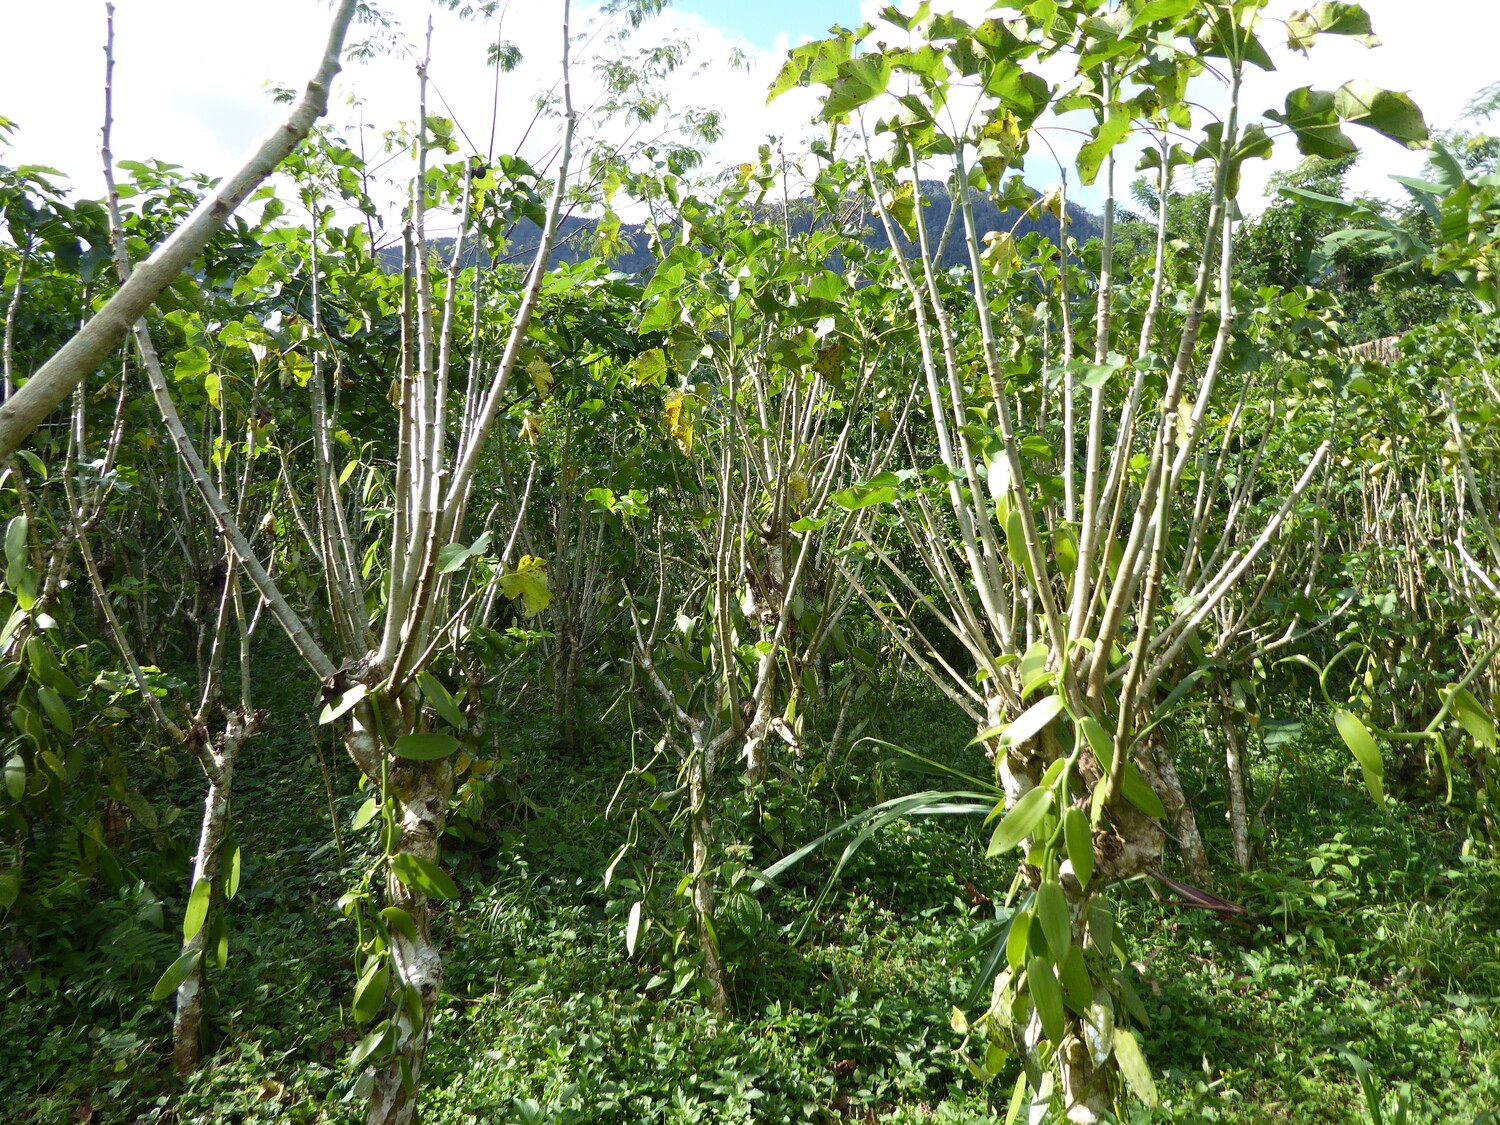 Vanilla agroforest on former allowland